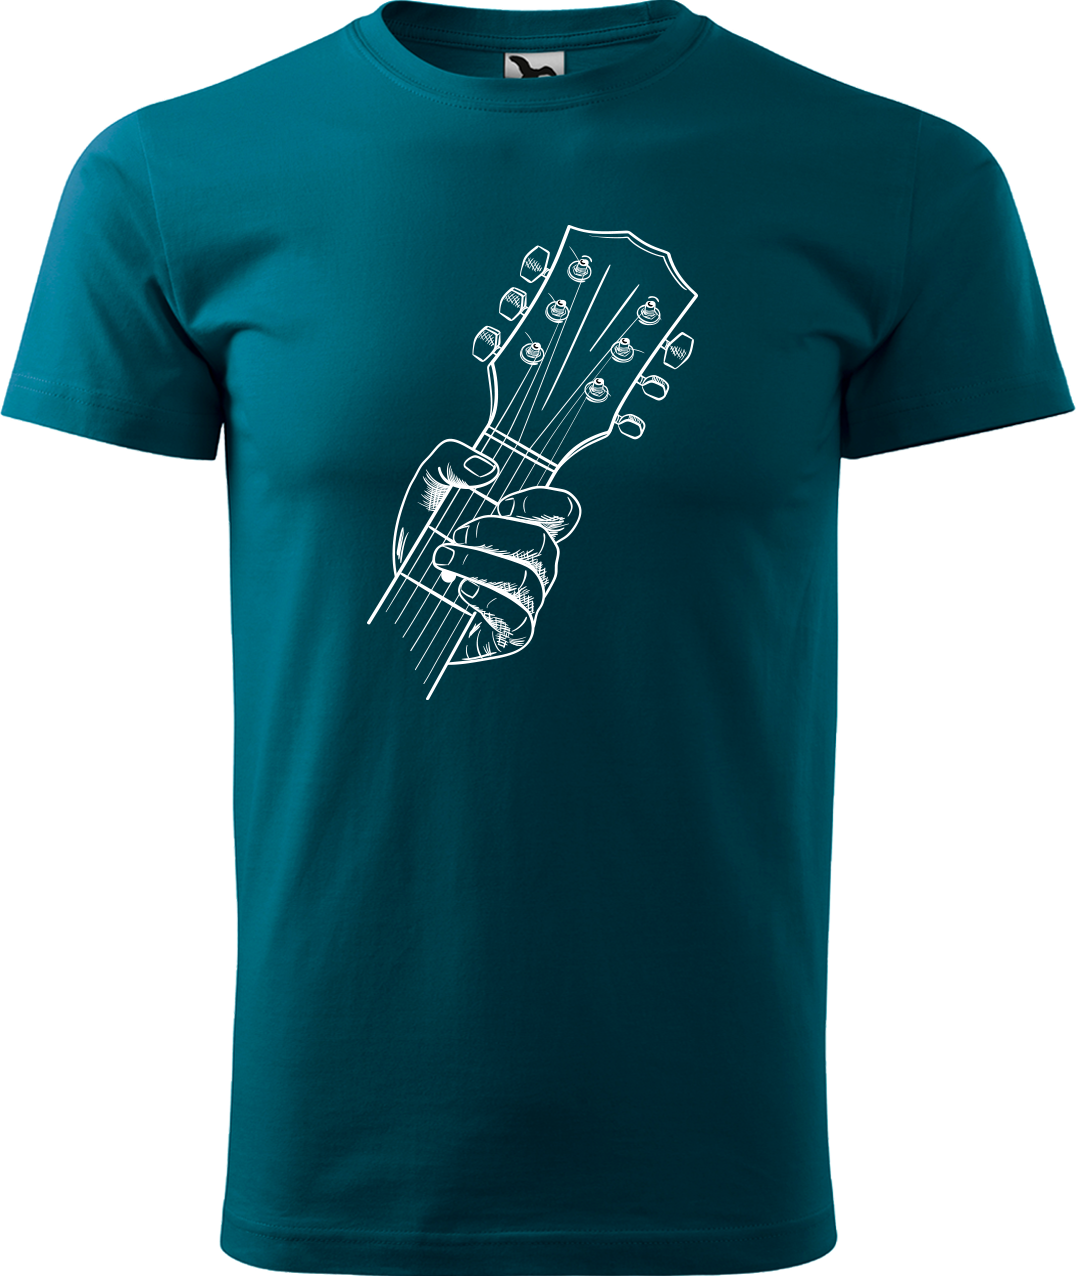 Pánské tričko s kytarou - Hlava kytary Velikost: 4XL, Barva: Petrolejová (93)